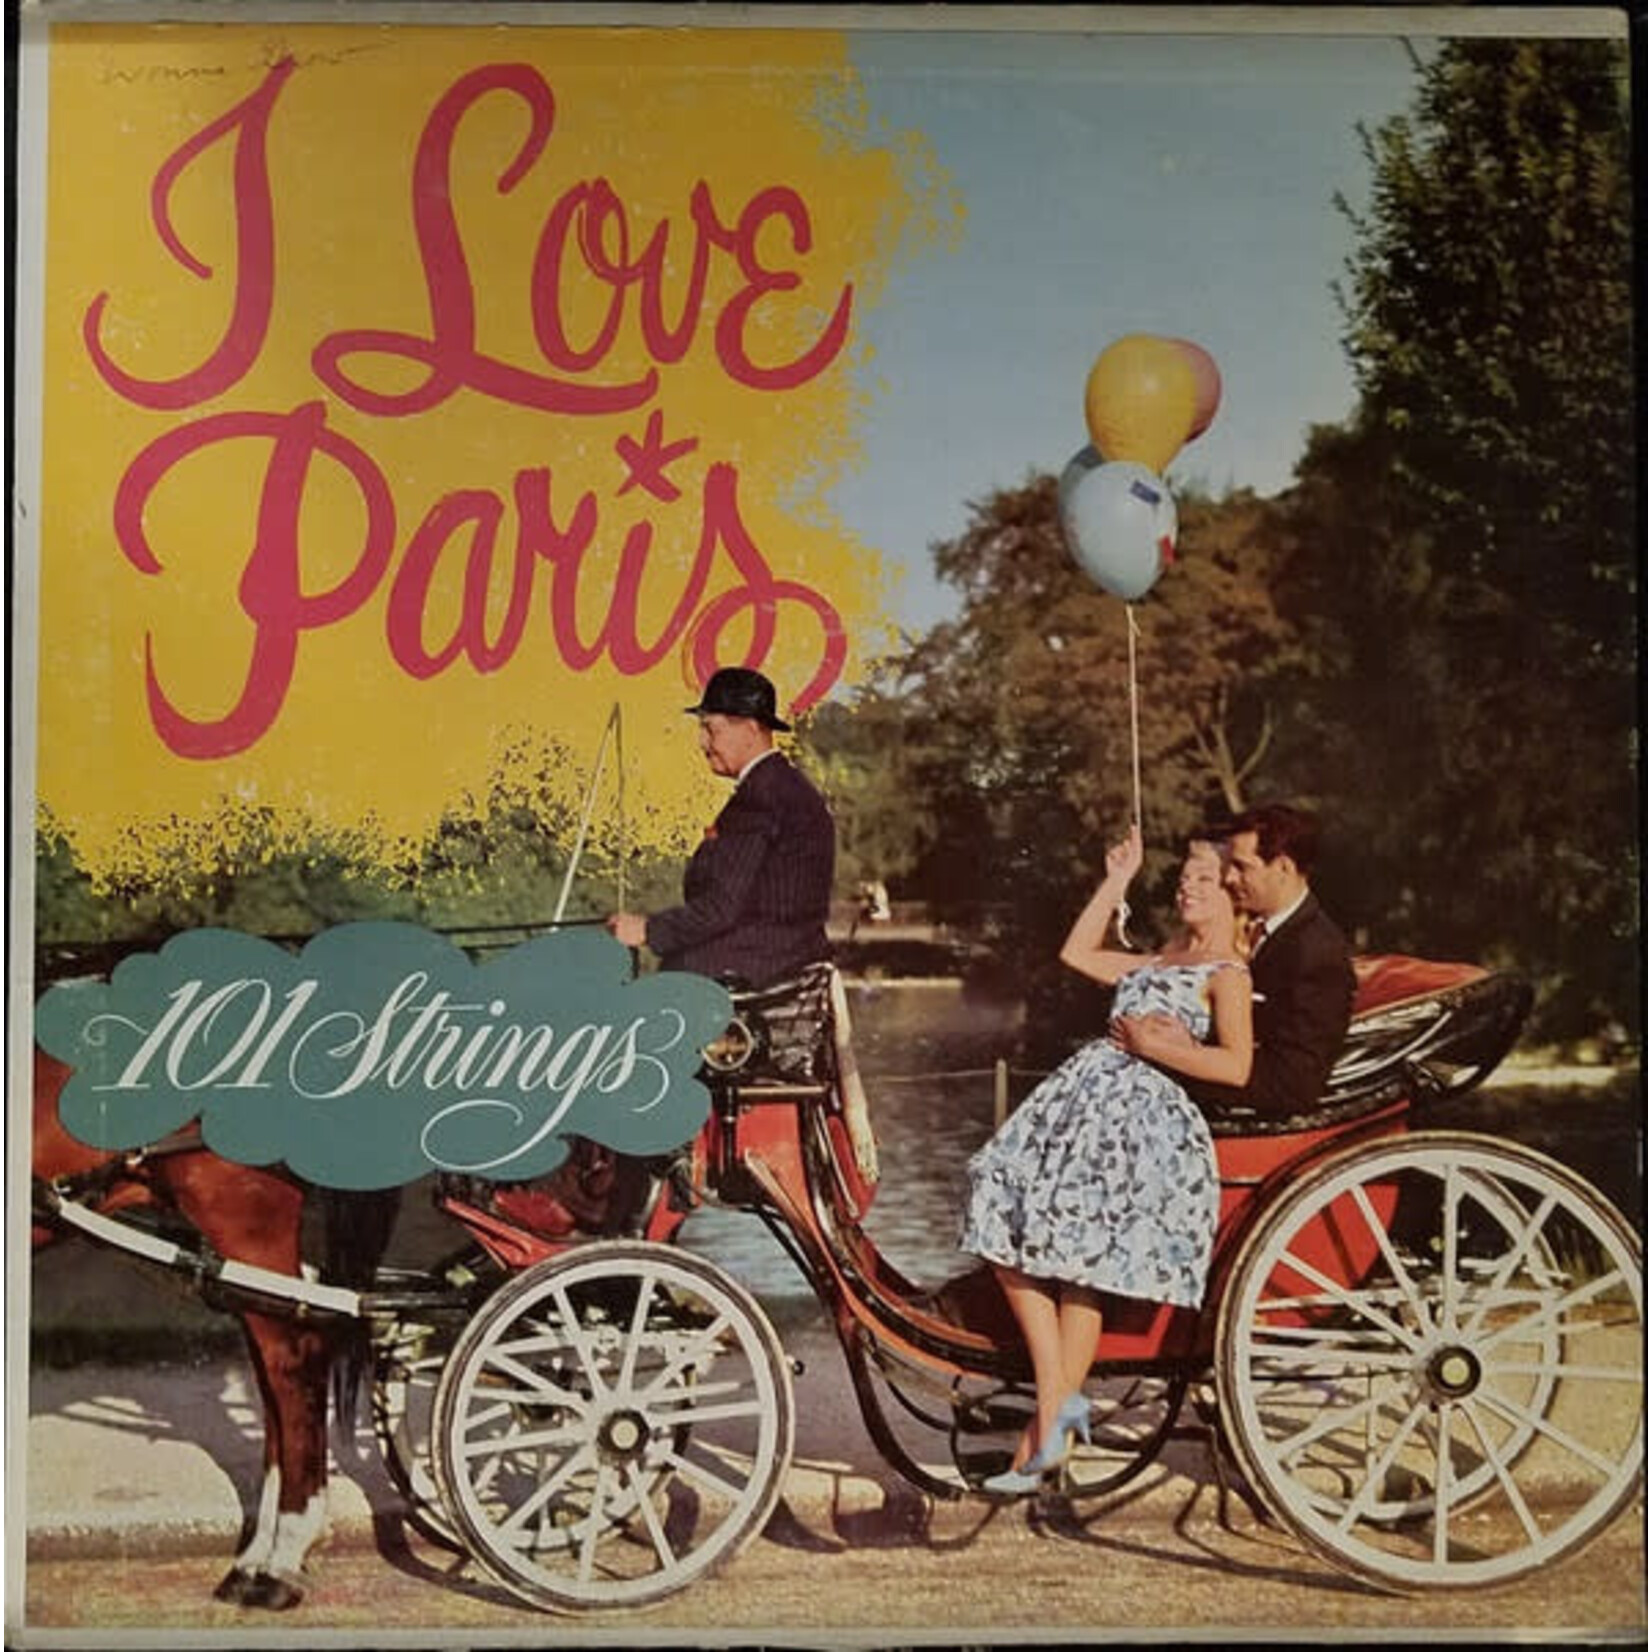 101 Strings – I Love Paris (VG)